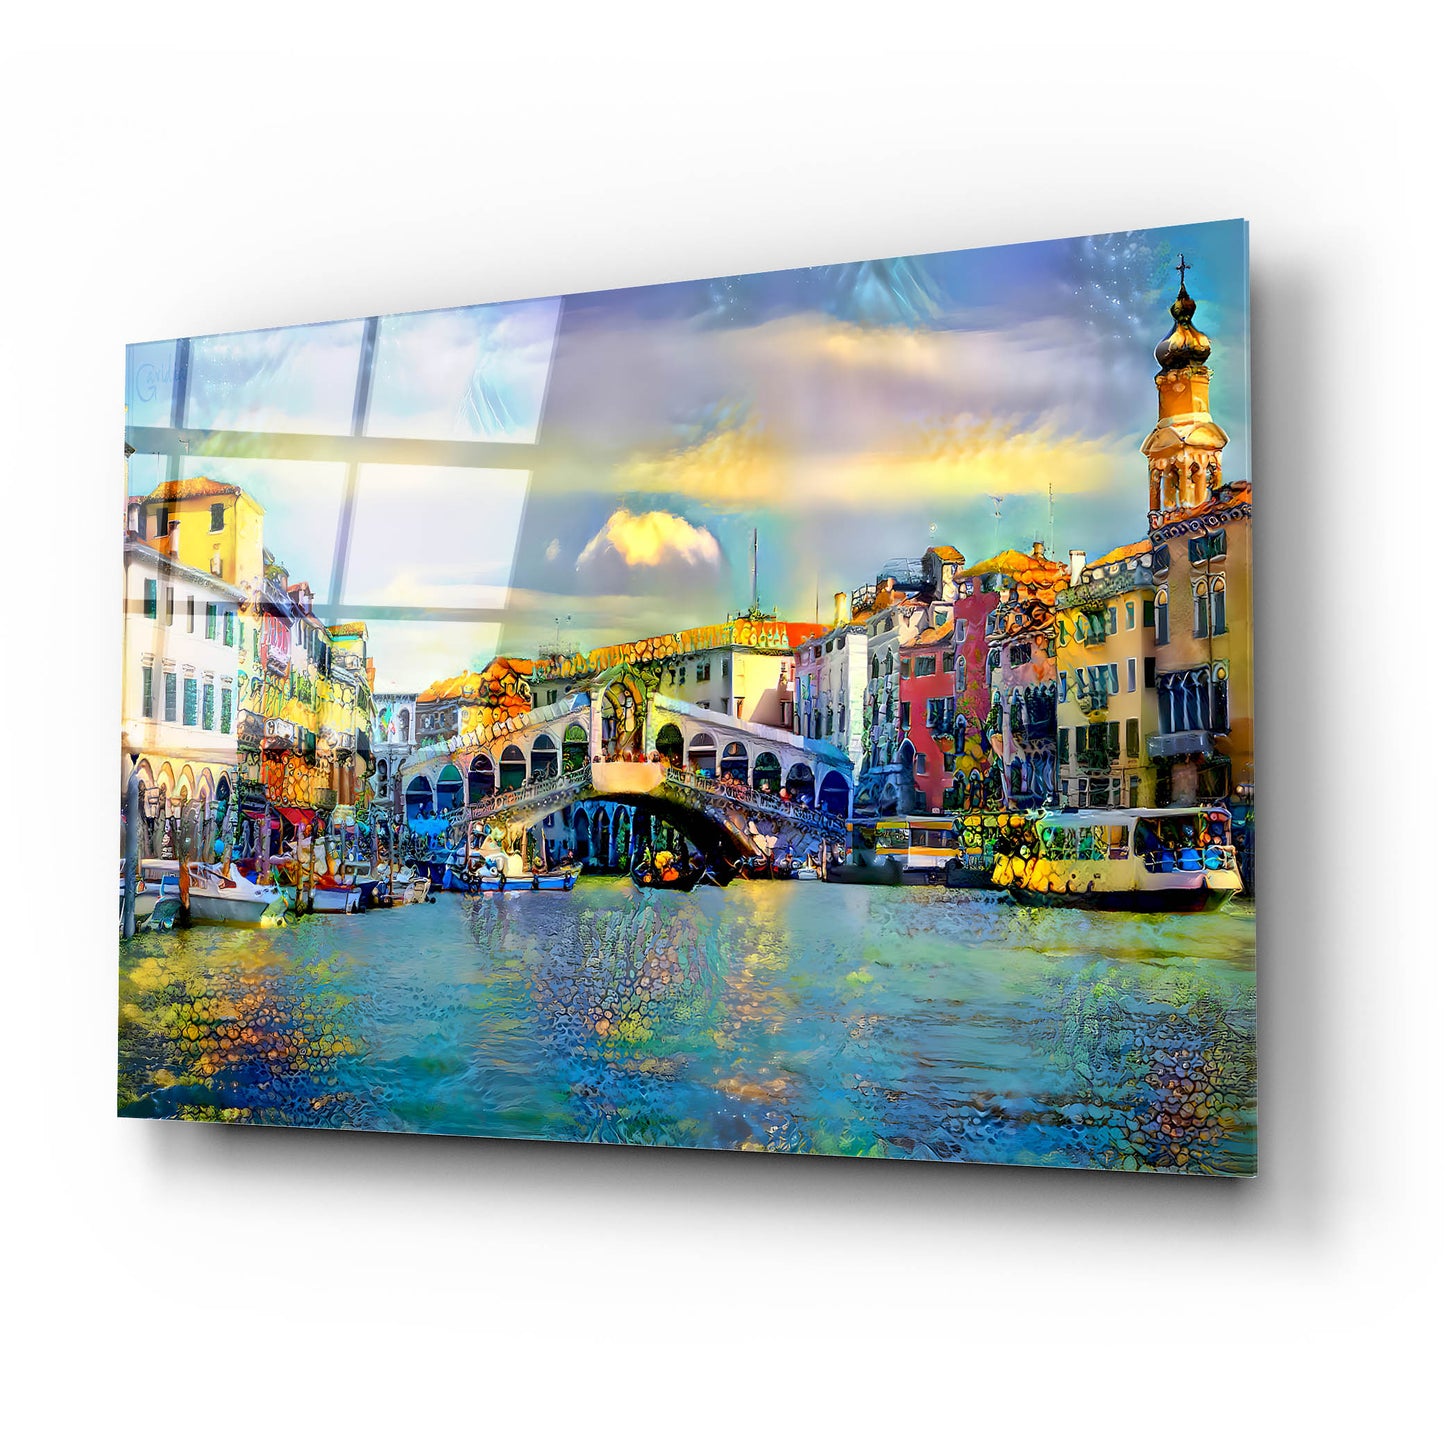 Epic Art 'Venice Italy Rialto Bridge' by Pedro Gavidia, Acrylic Glass Wall Art,24x16